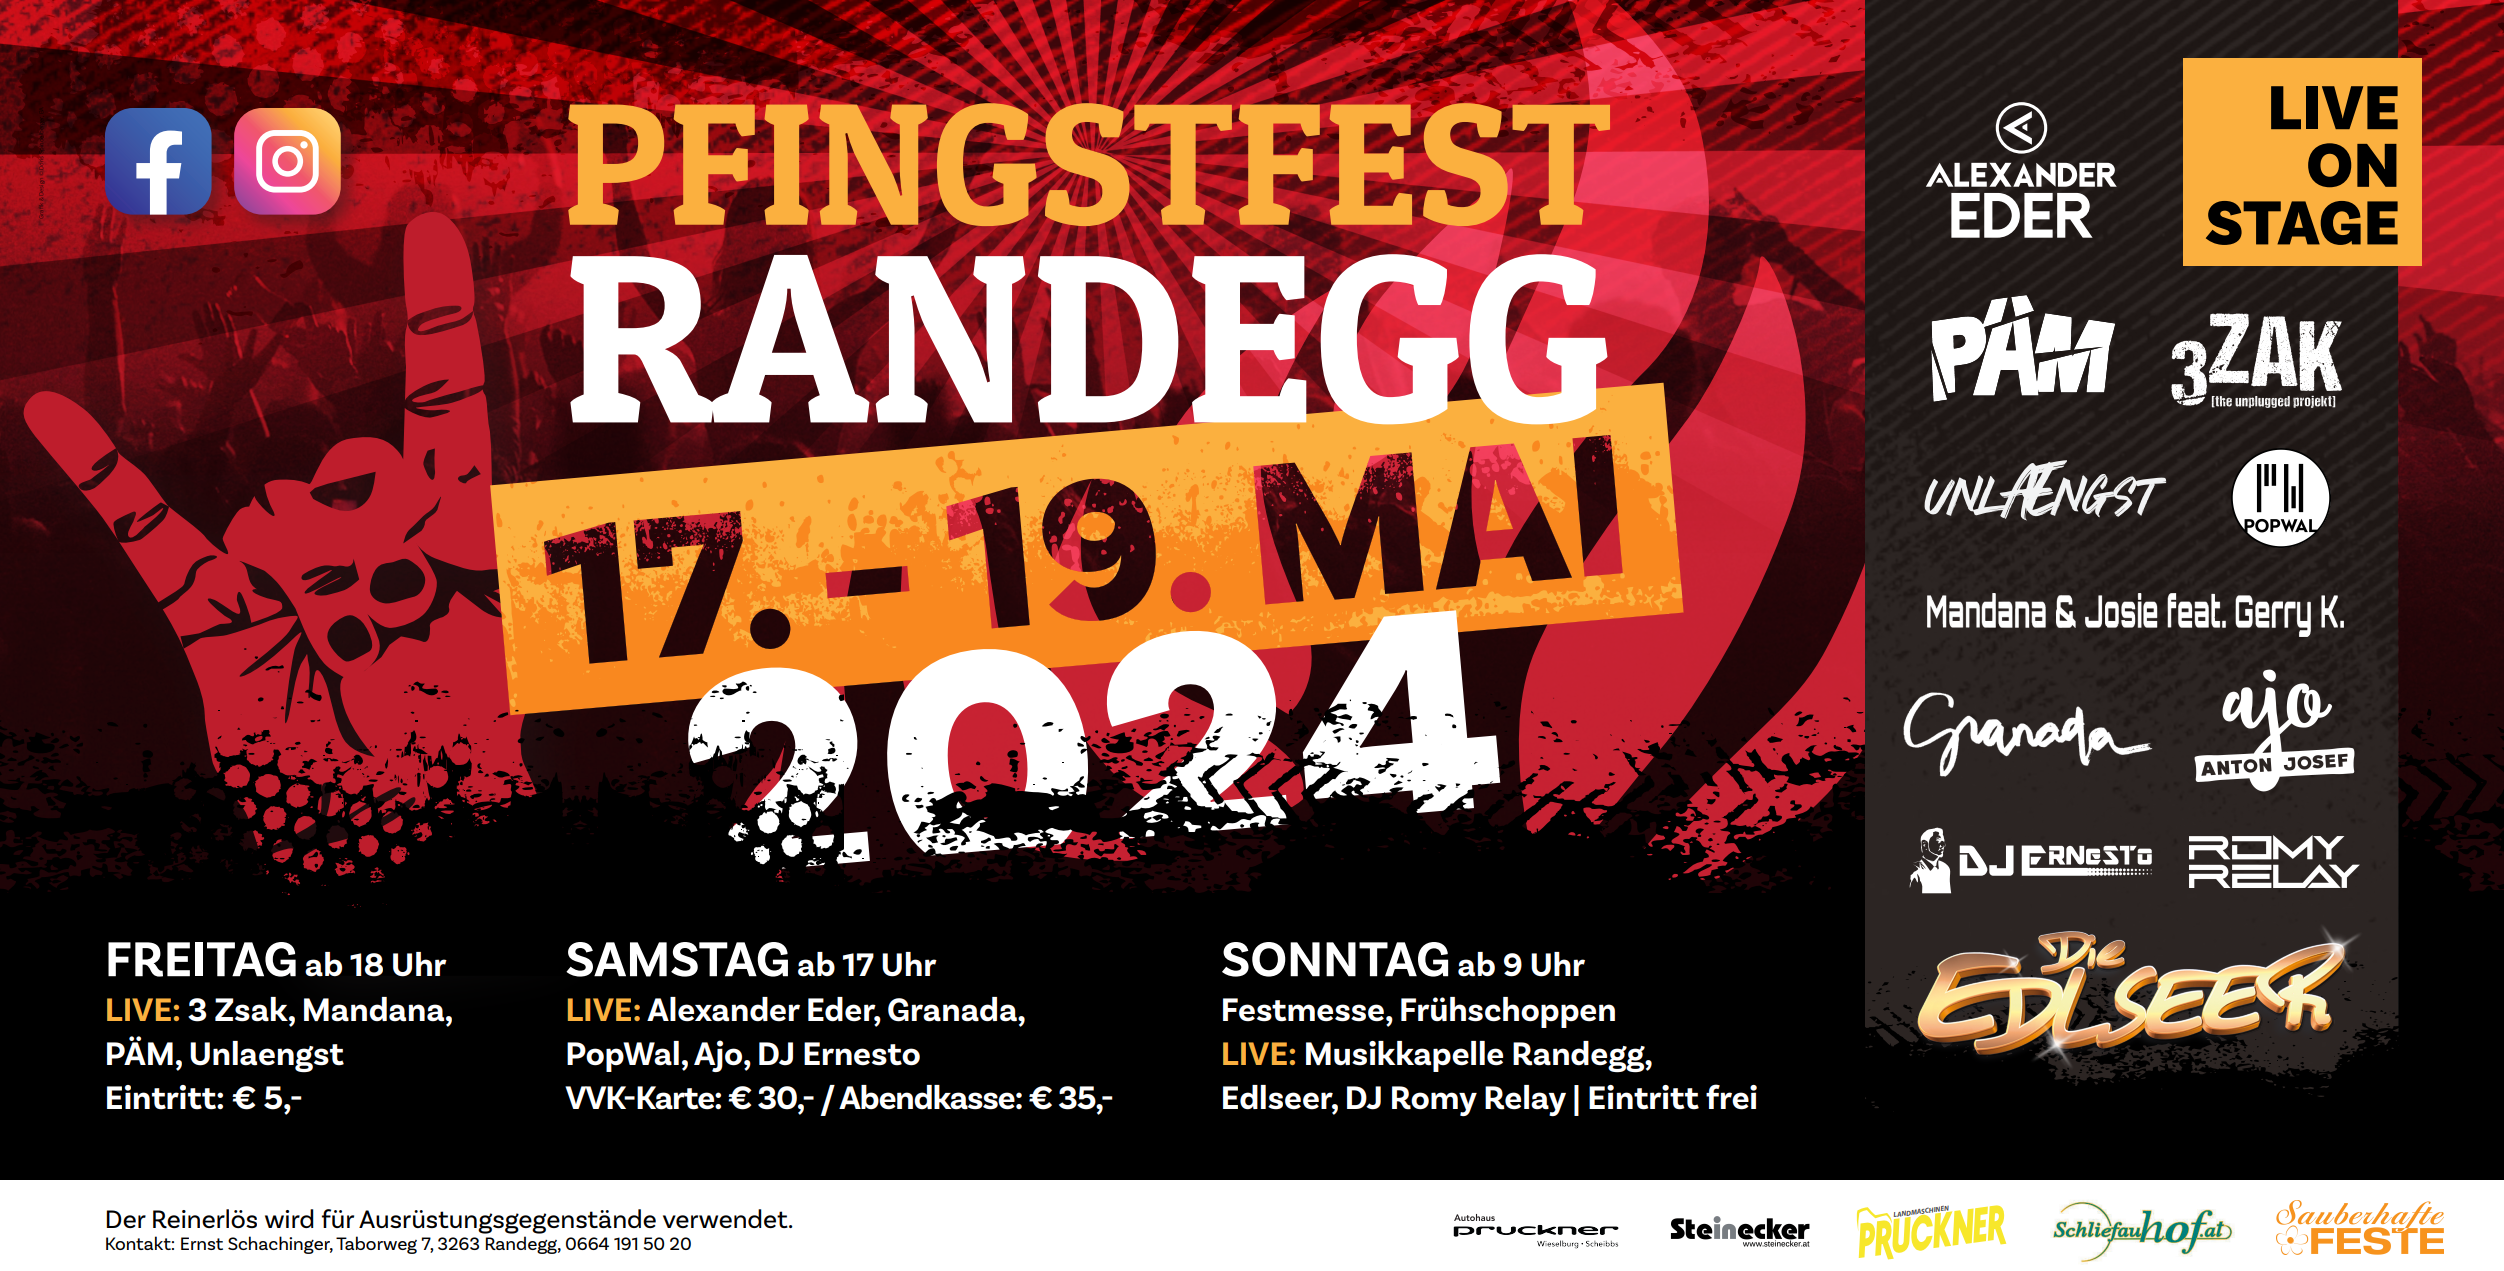 Pfingstfest in Randegg